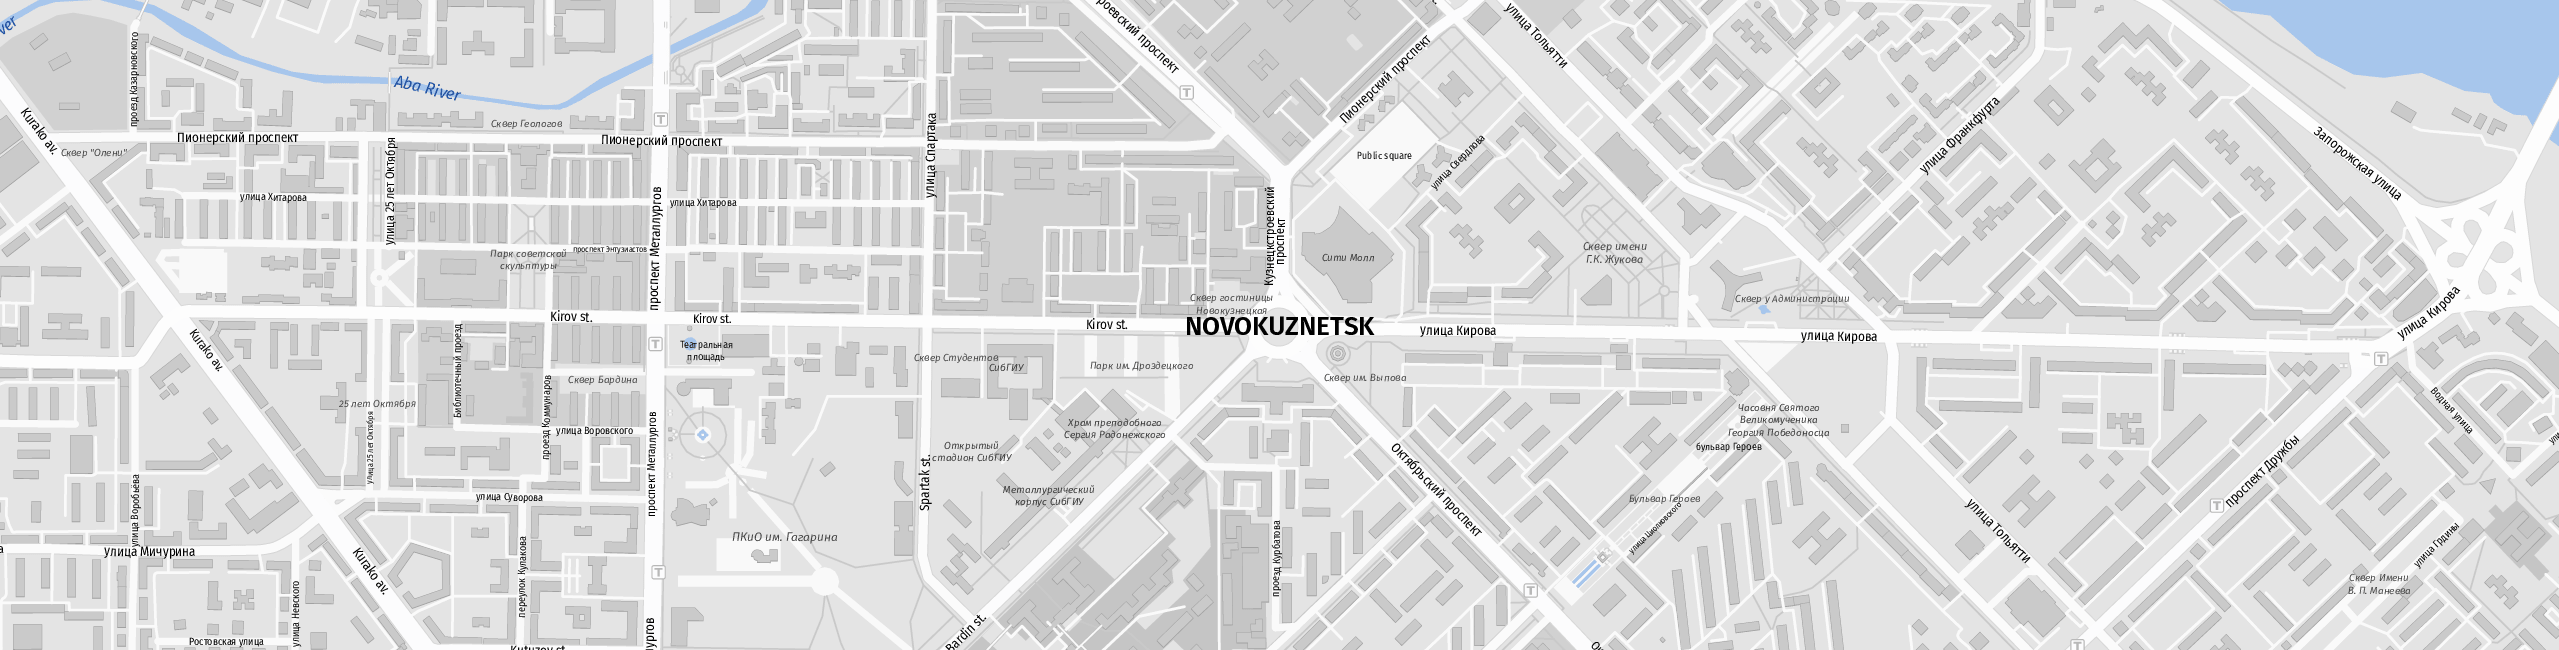 Stadtplan Nowokusnezk zum Downloaden.